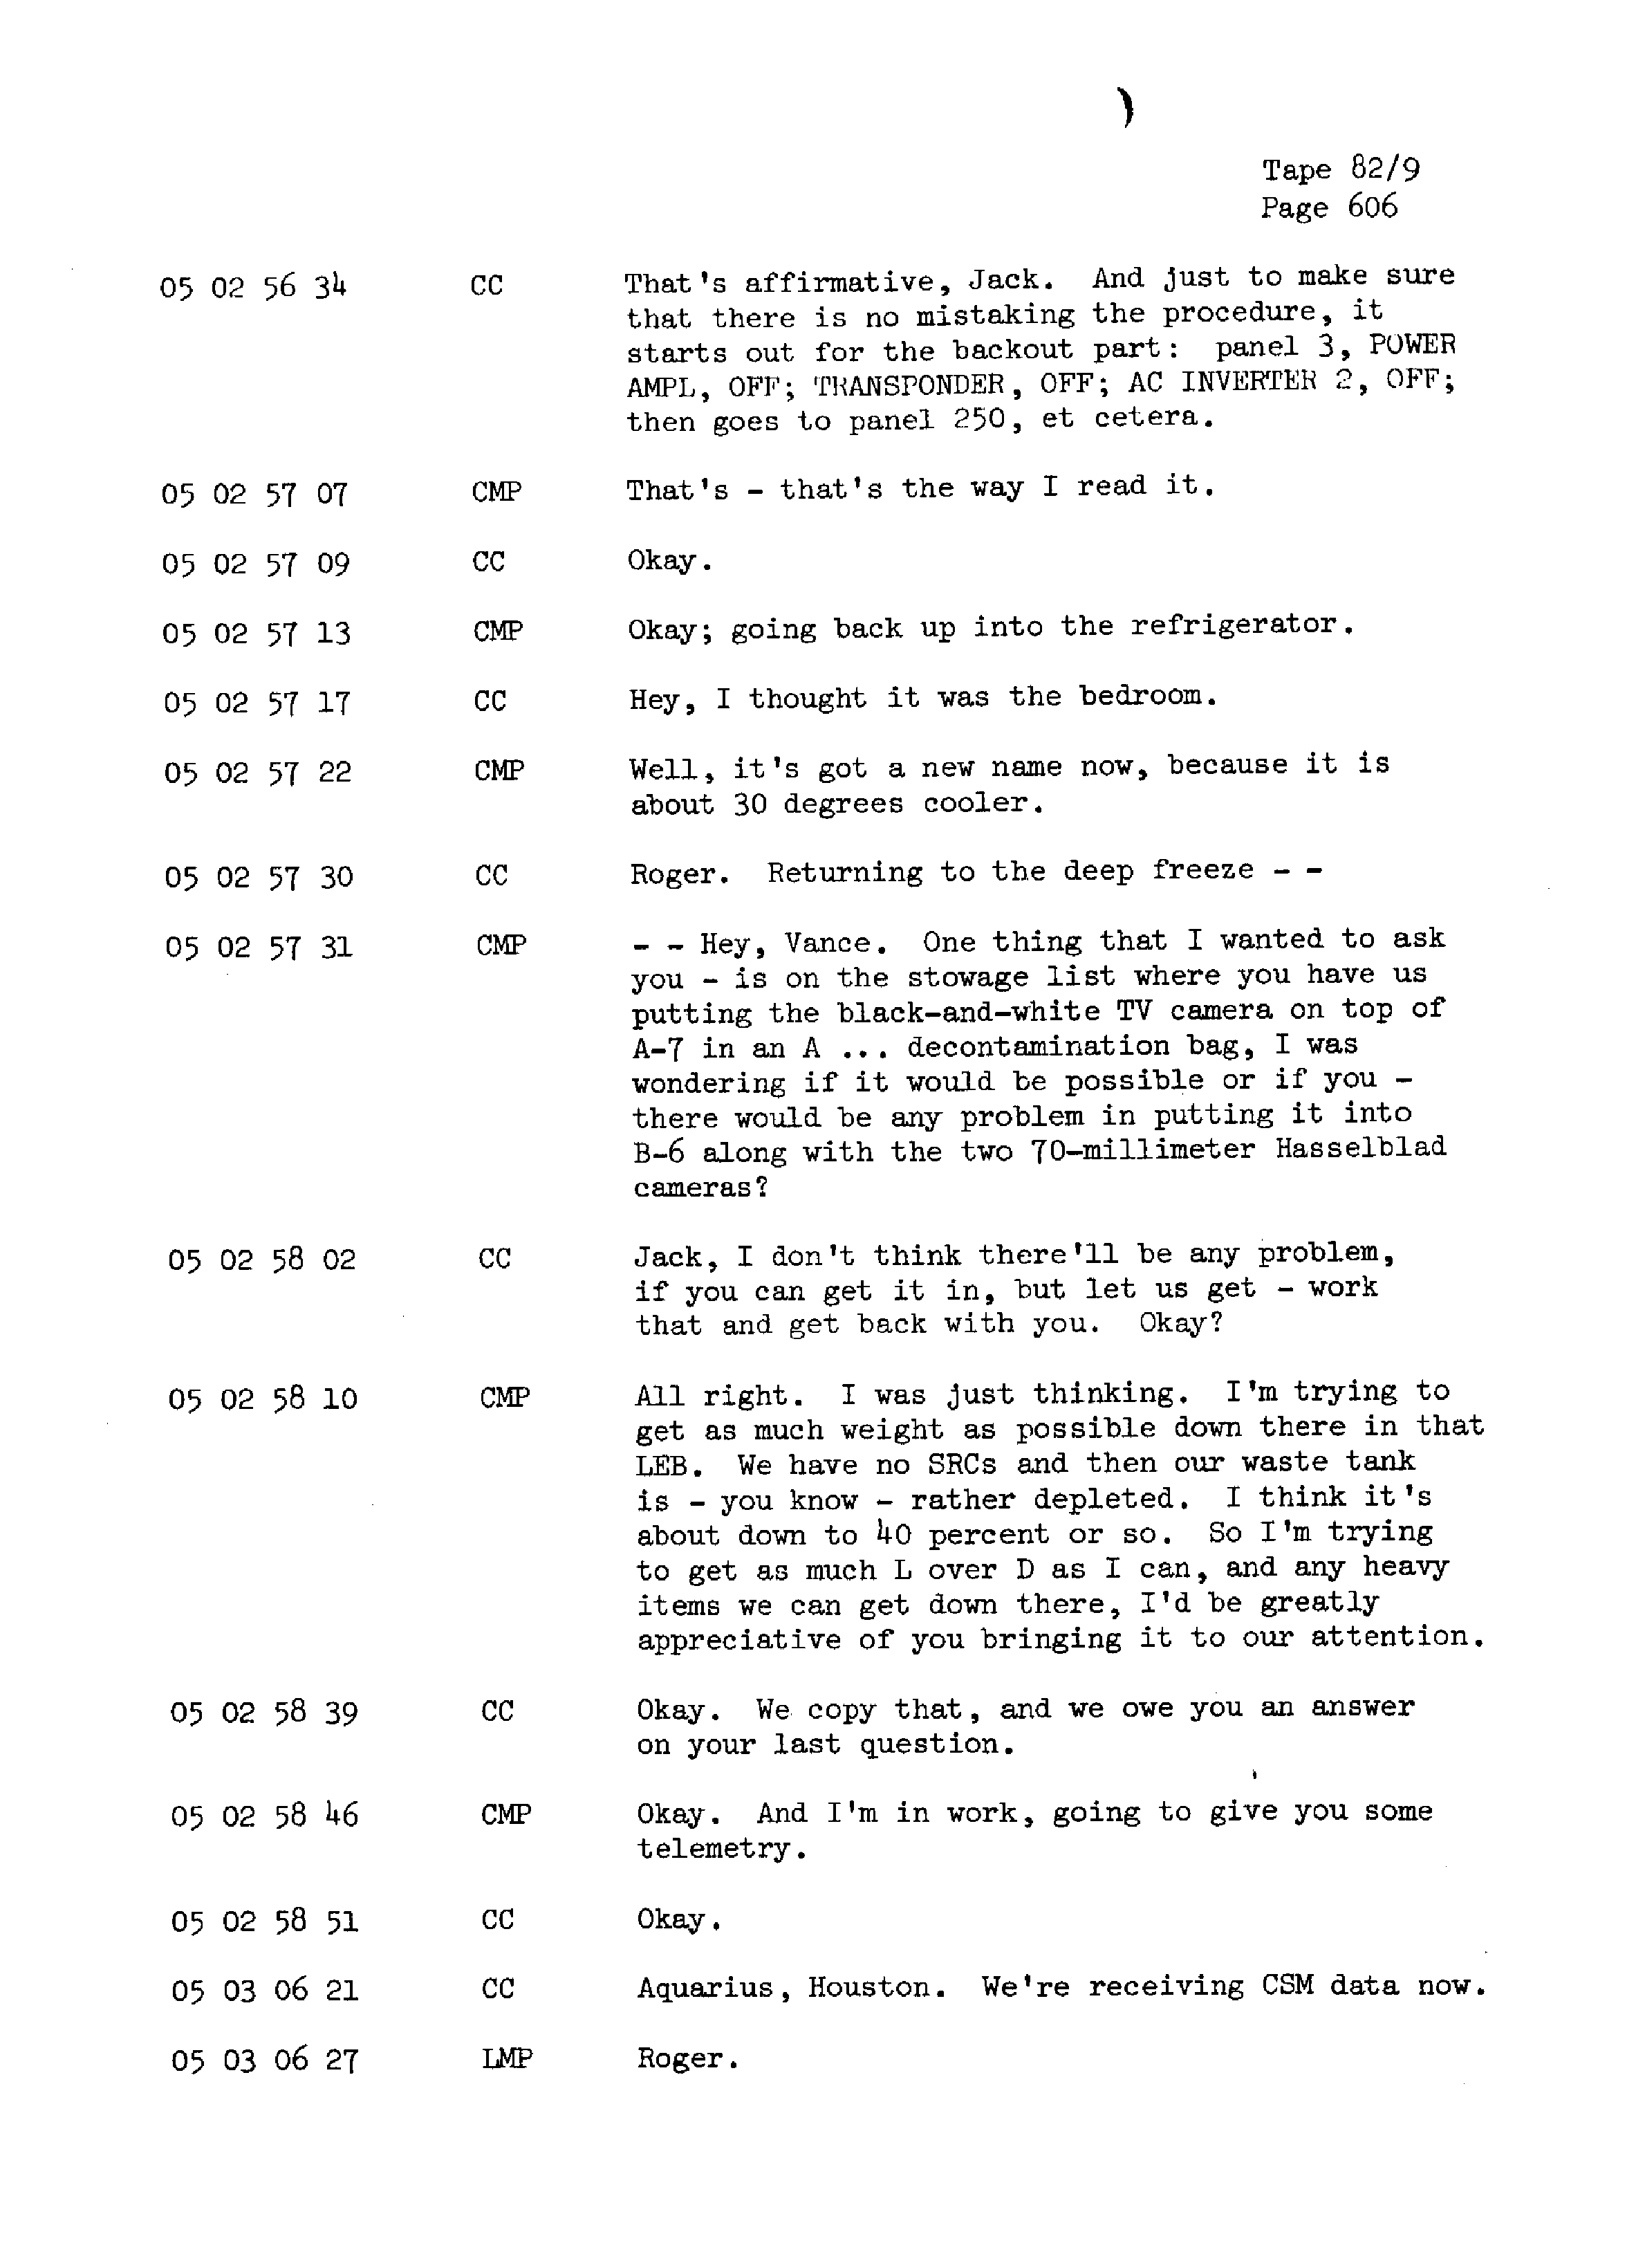 Page 613 of Apollo 13’s original transcript